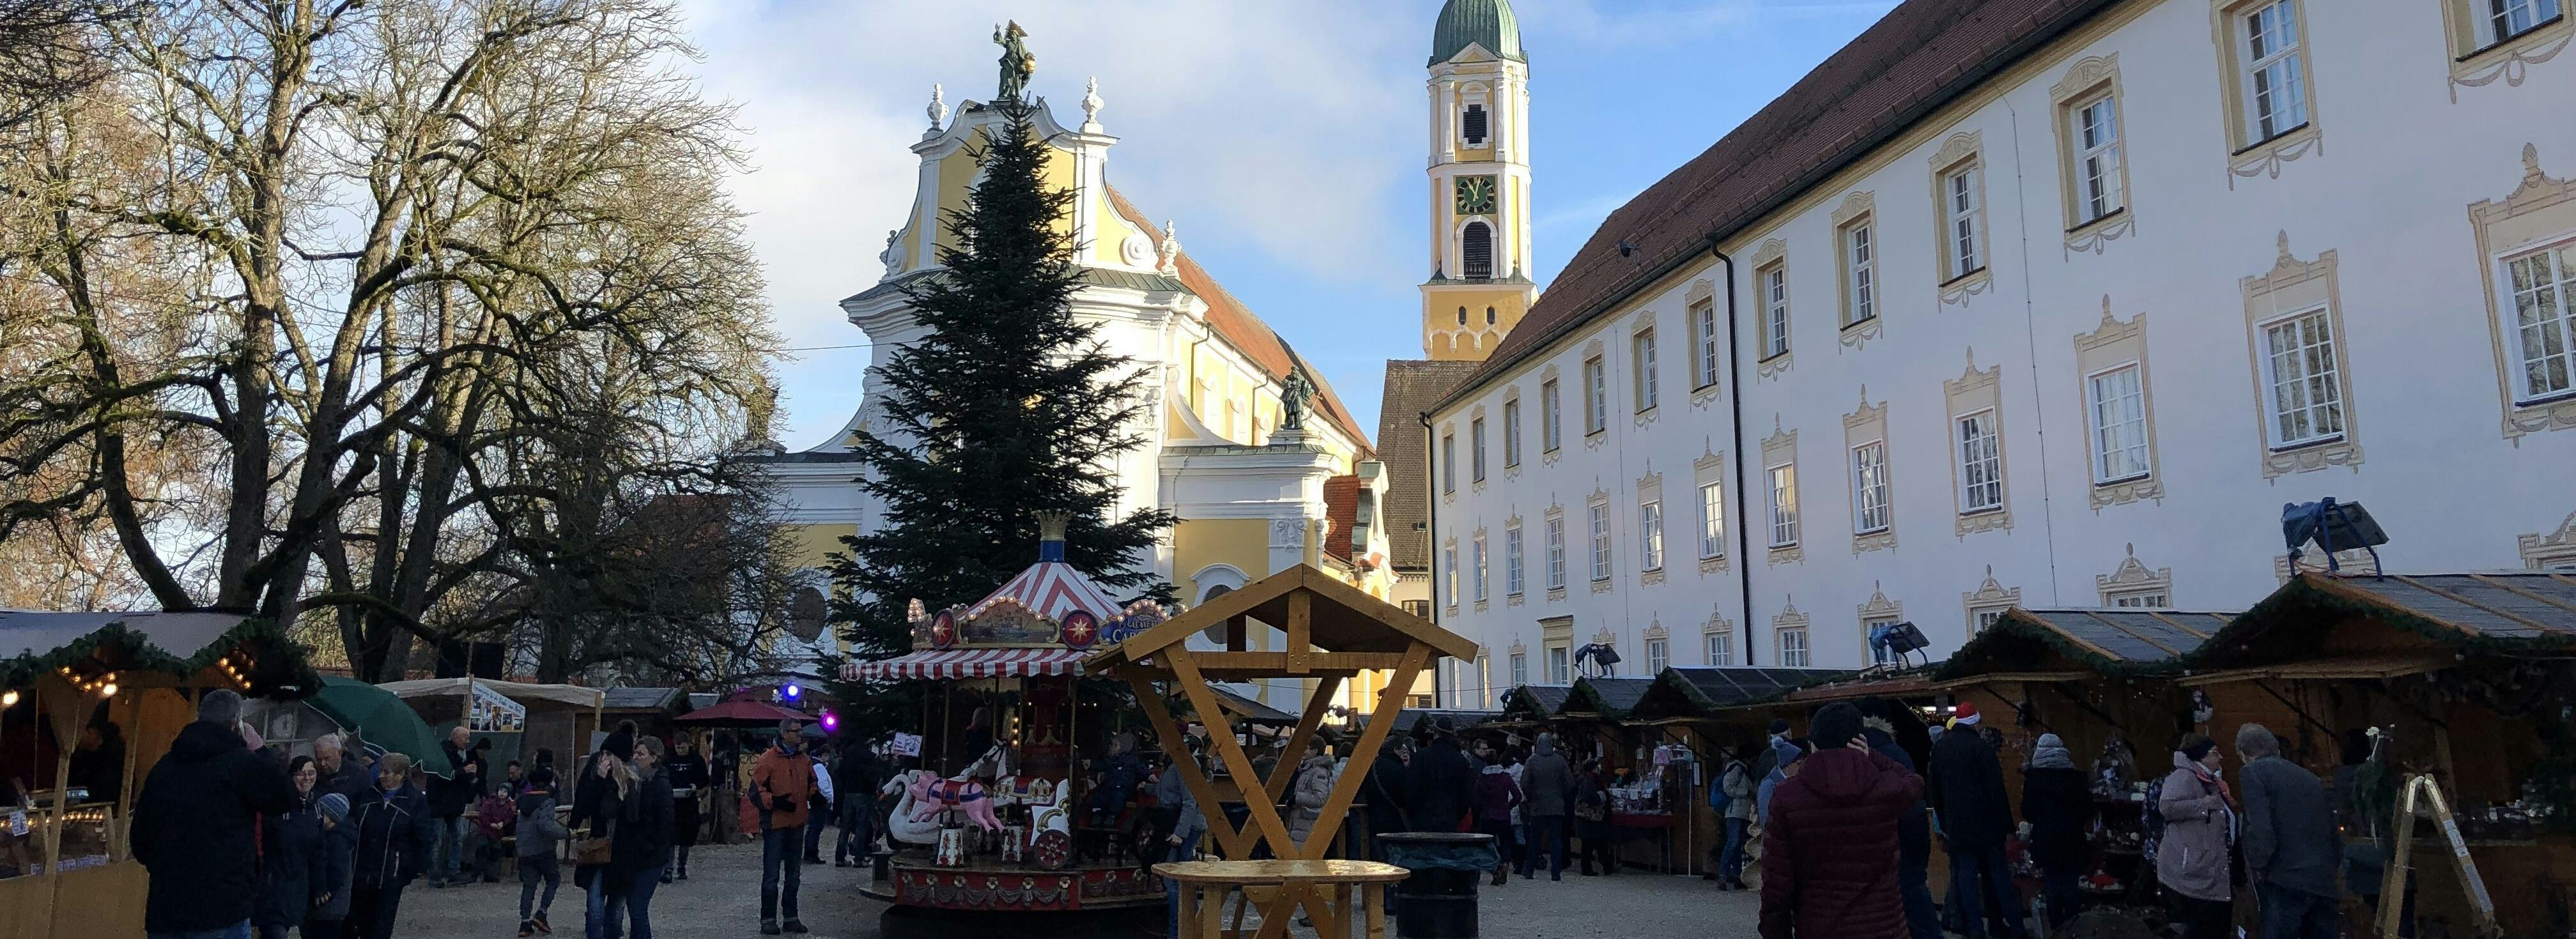 Ochsenhausen Weihnachtsmarkt Ramsauer Carreisen